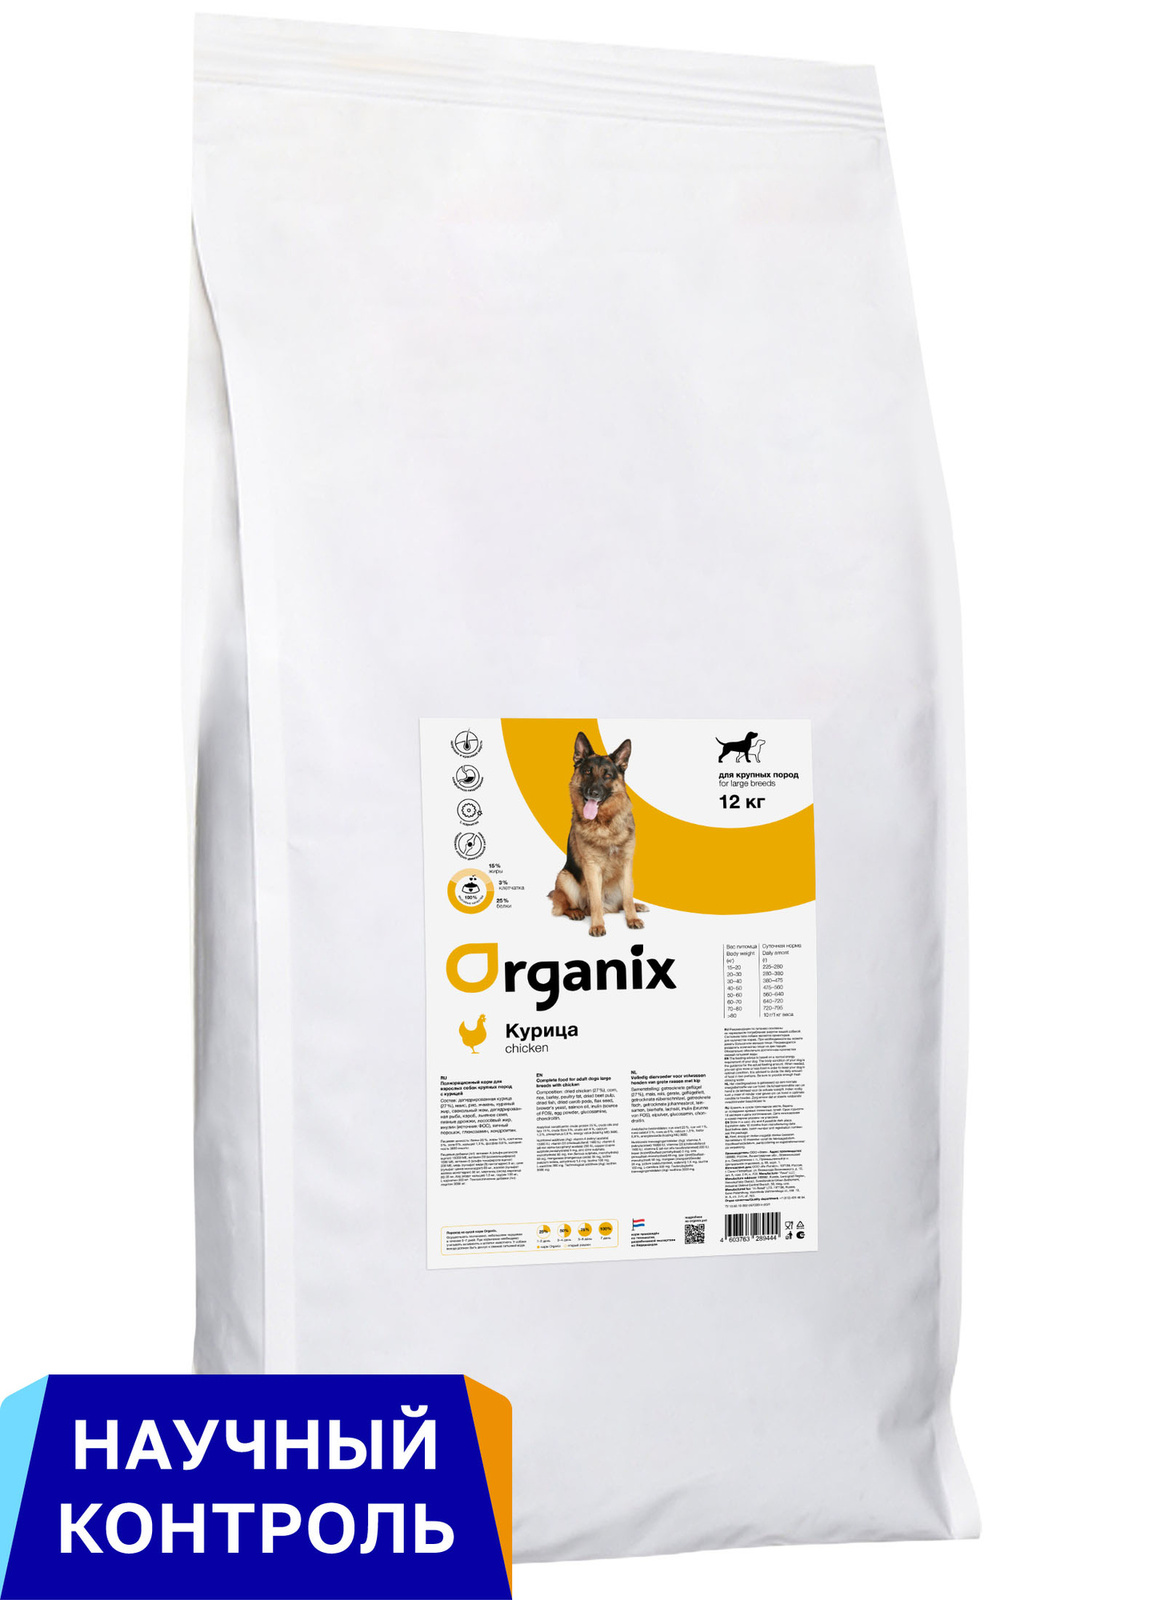 Organix Organix сухой корм для собак крупных пород, с курицей (12 кг)